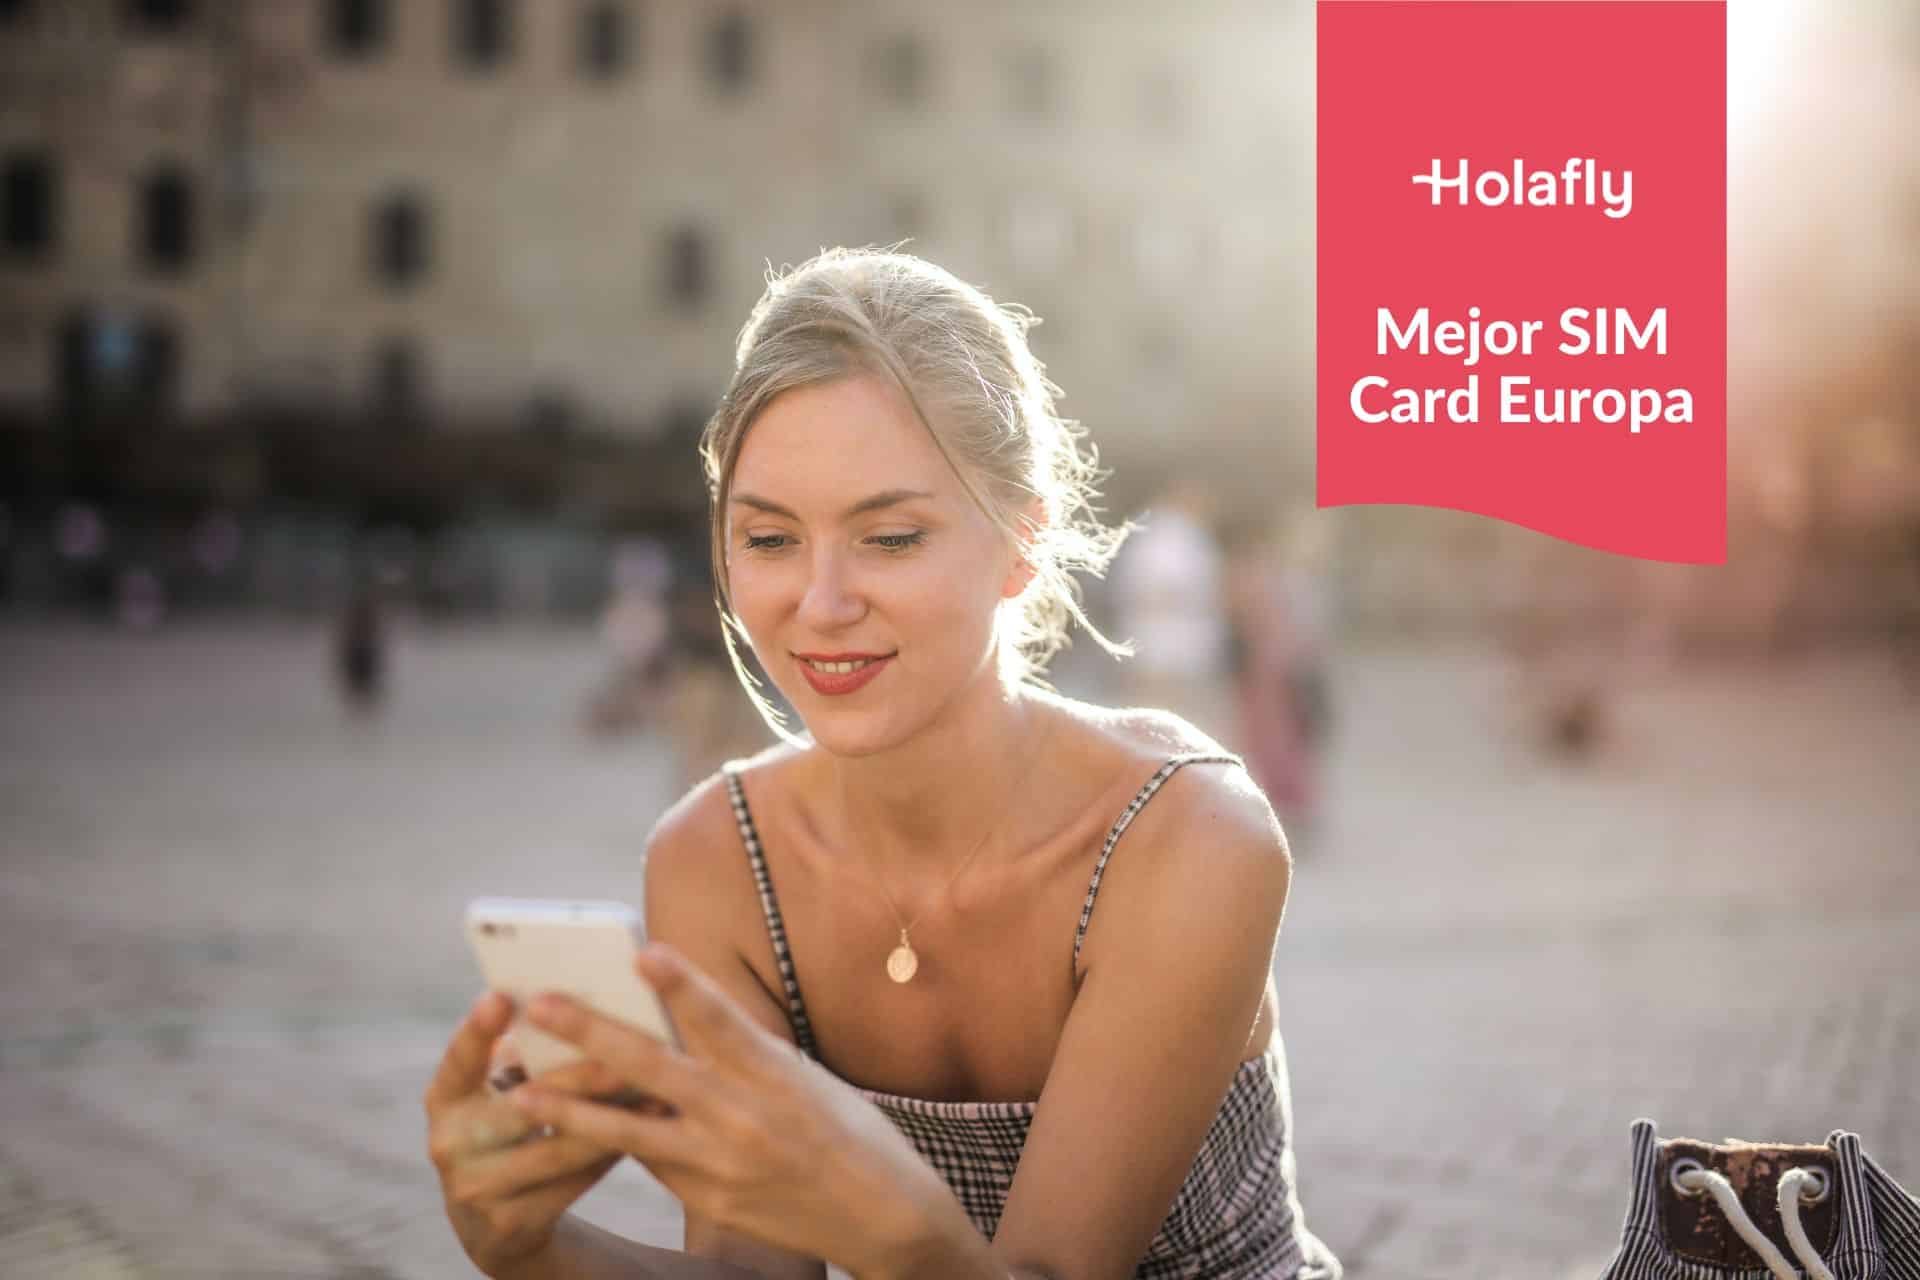 Las 7 Mejores Tarjetas SIM Prepago para Europa en 2023